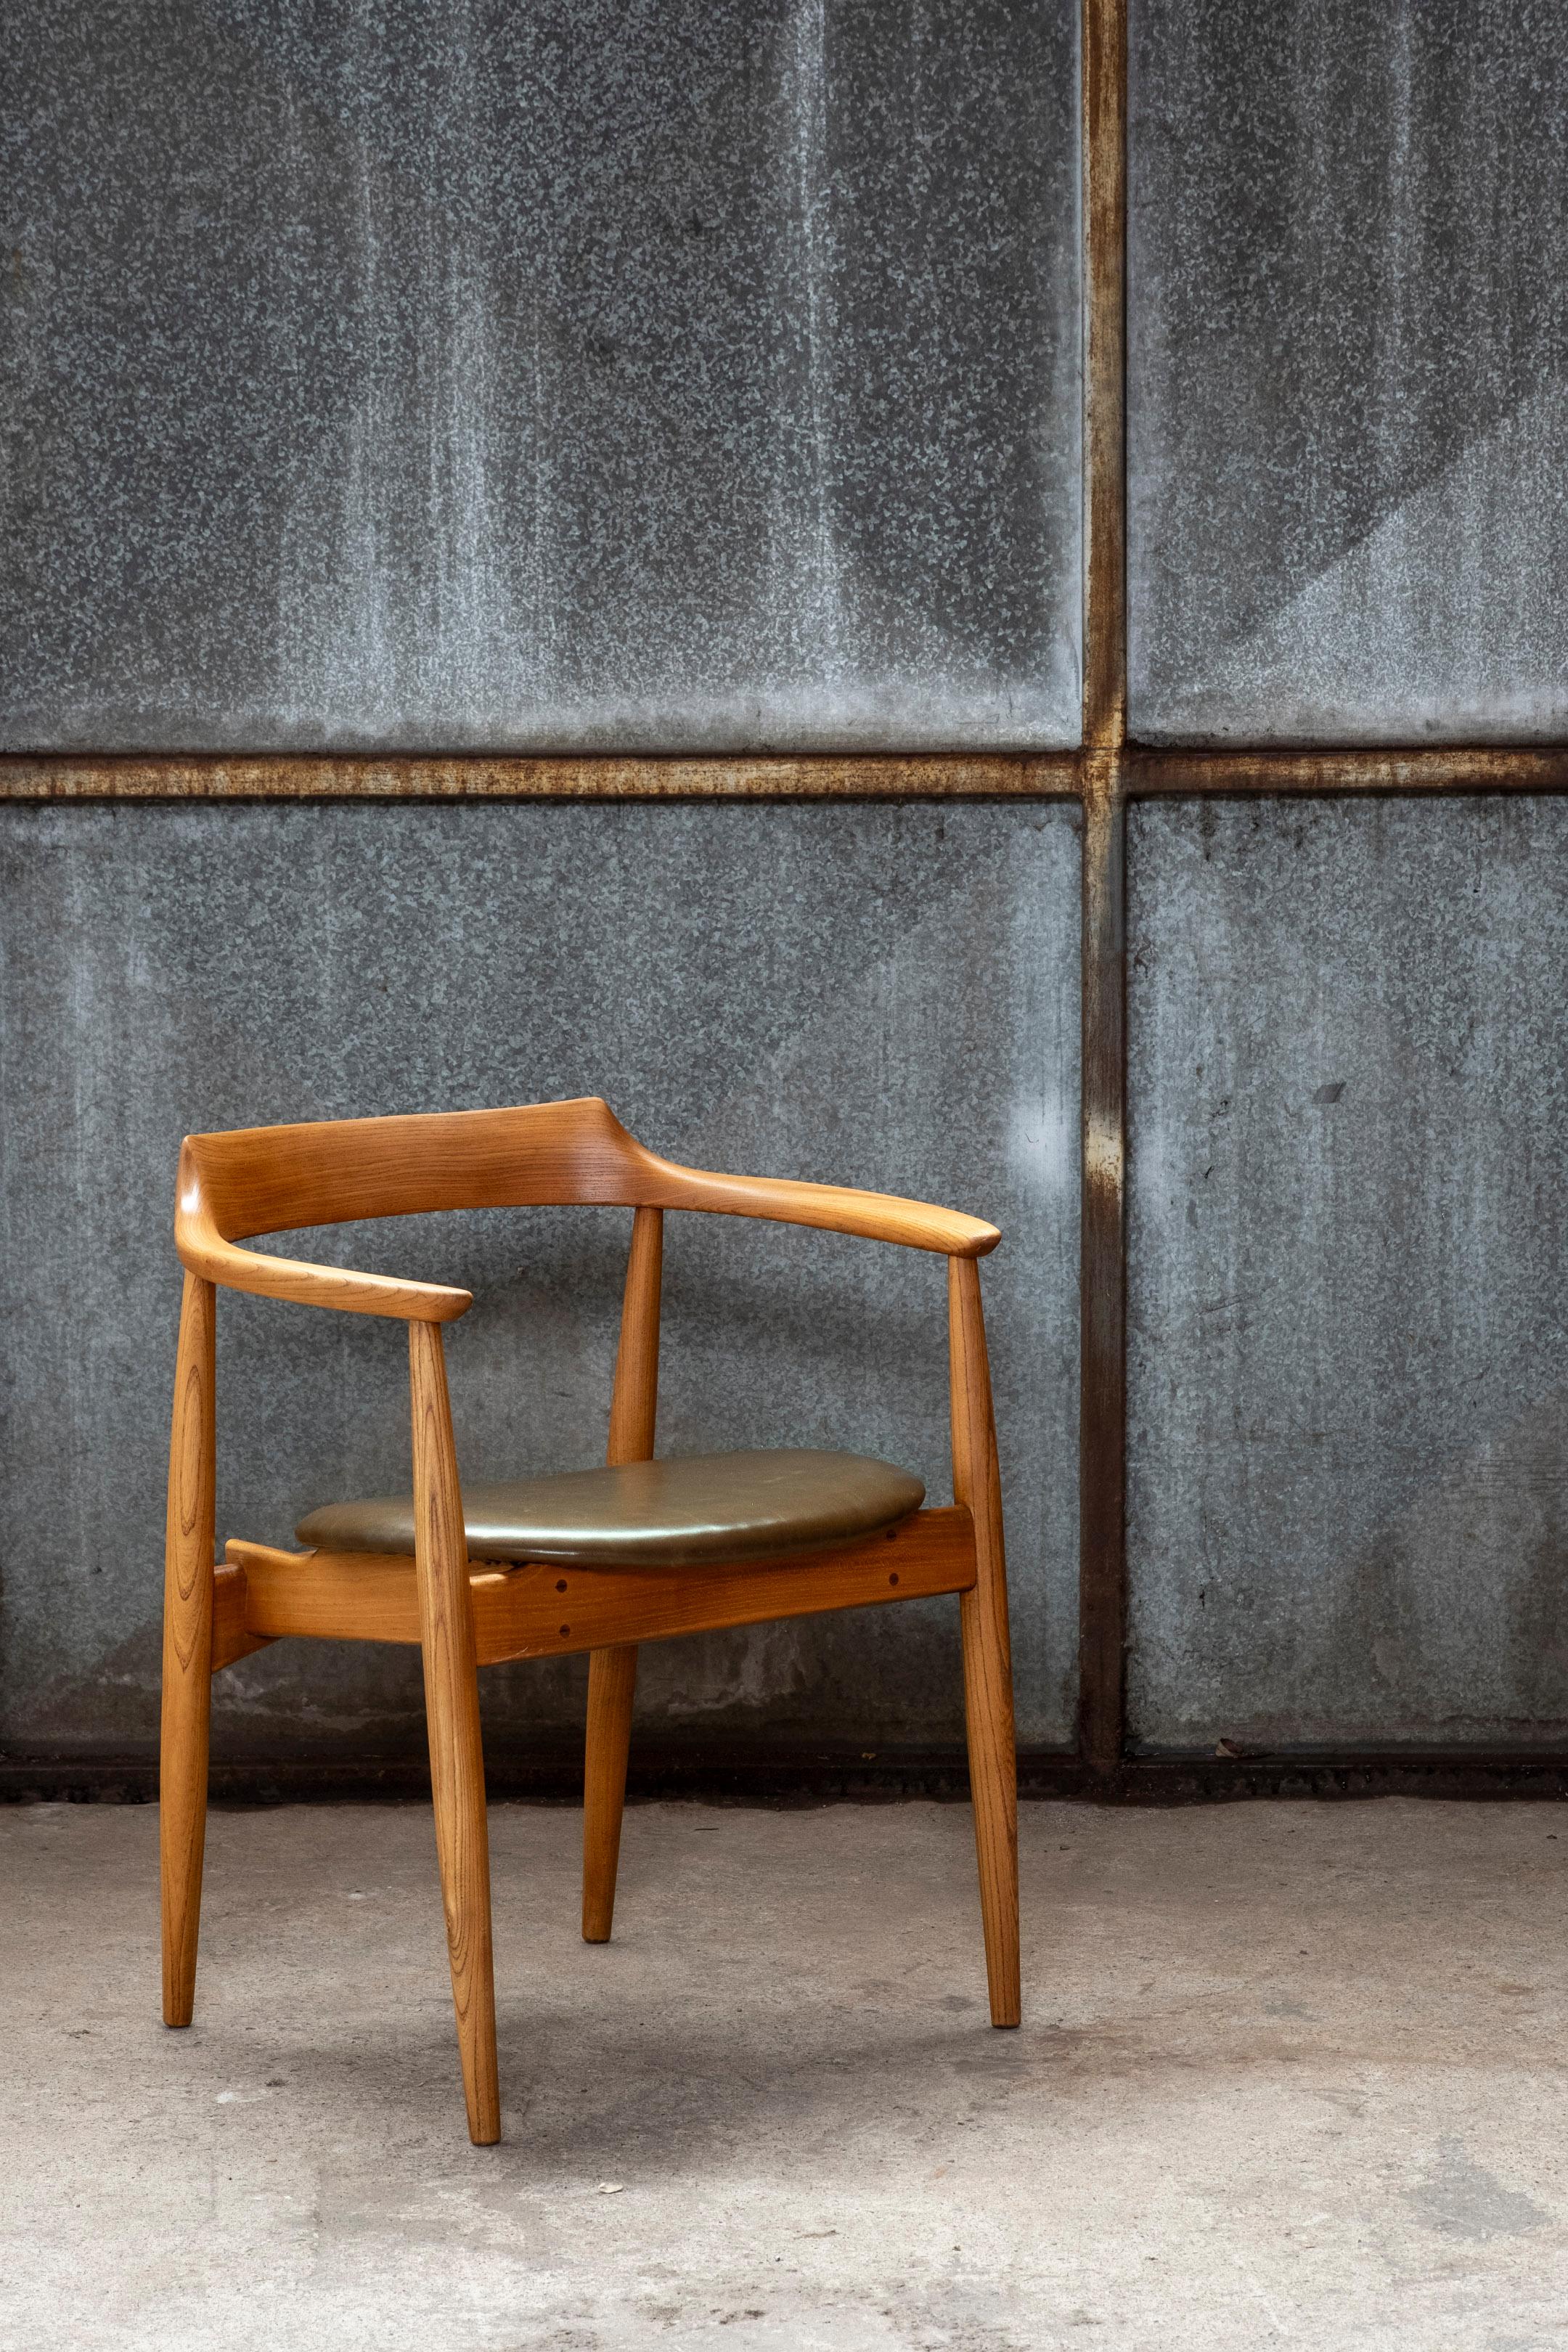 Runder Sessel aus Ulme, entworfen von Arne Wahl Iversen für Aage Petersen/Stilén in den 1960er Jahren. Der Stuhl ist aus massivem Ulmenholz gefertigt, sogar die runde Rückenlehne und die Armlehnen sind aus einem einzigen Stück Ulmenholz, das mit